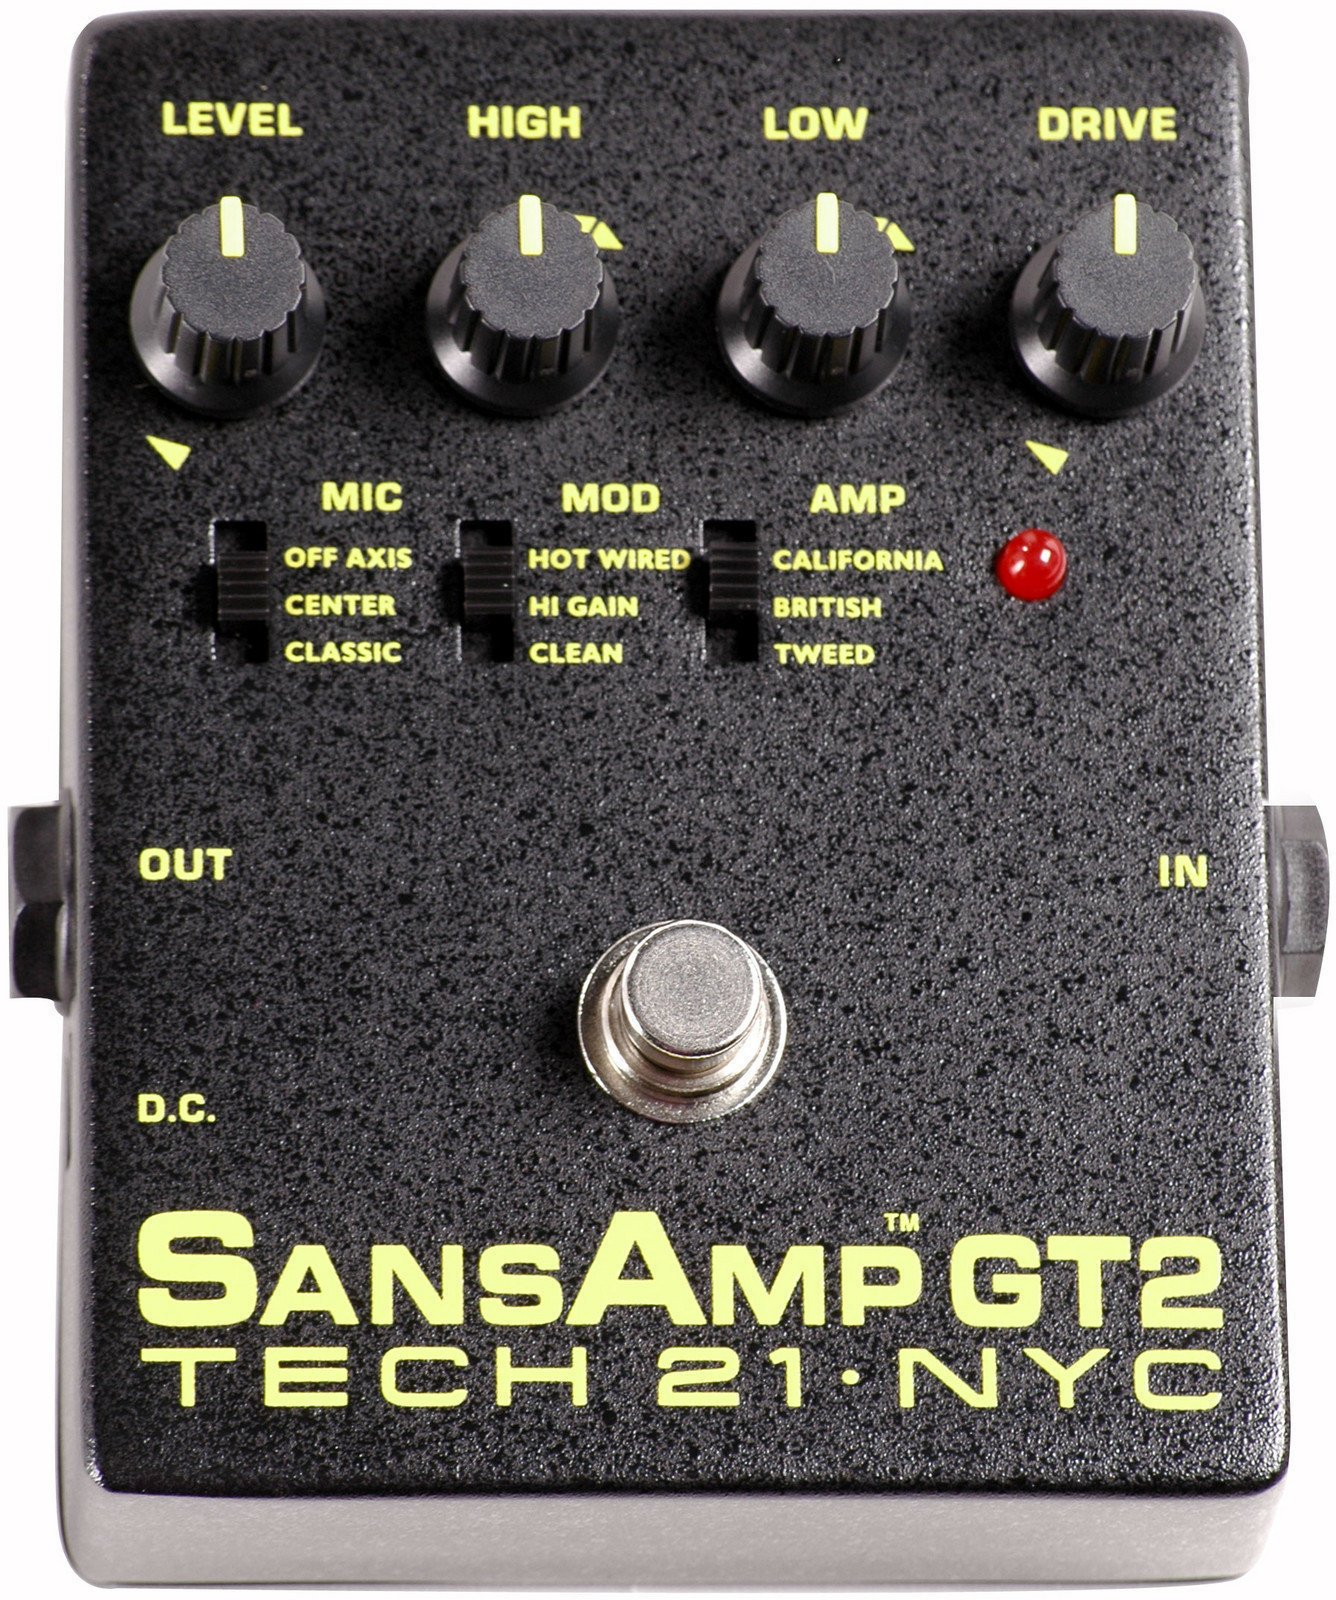 Guitar Effect Tech 21 SansAmp GT2